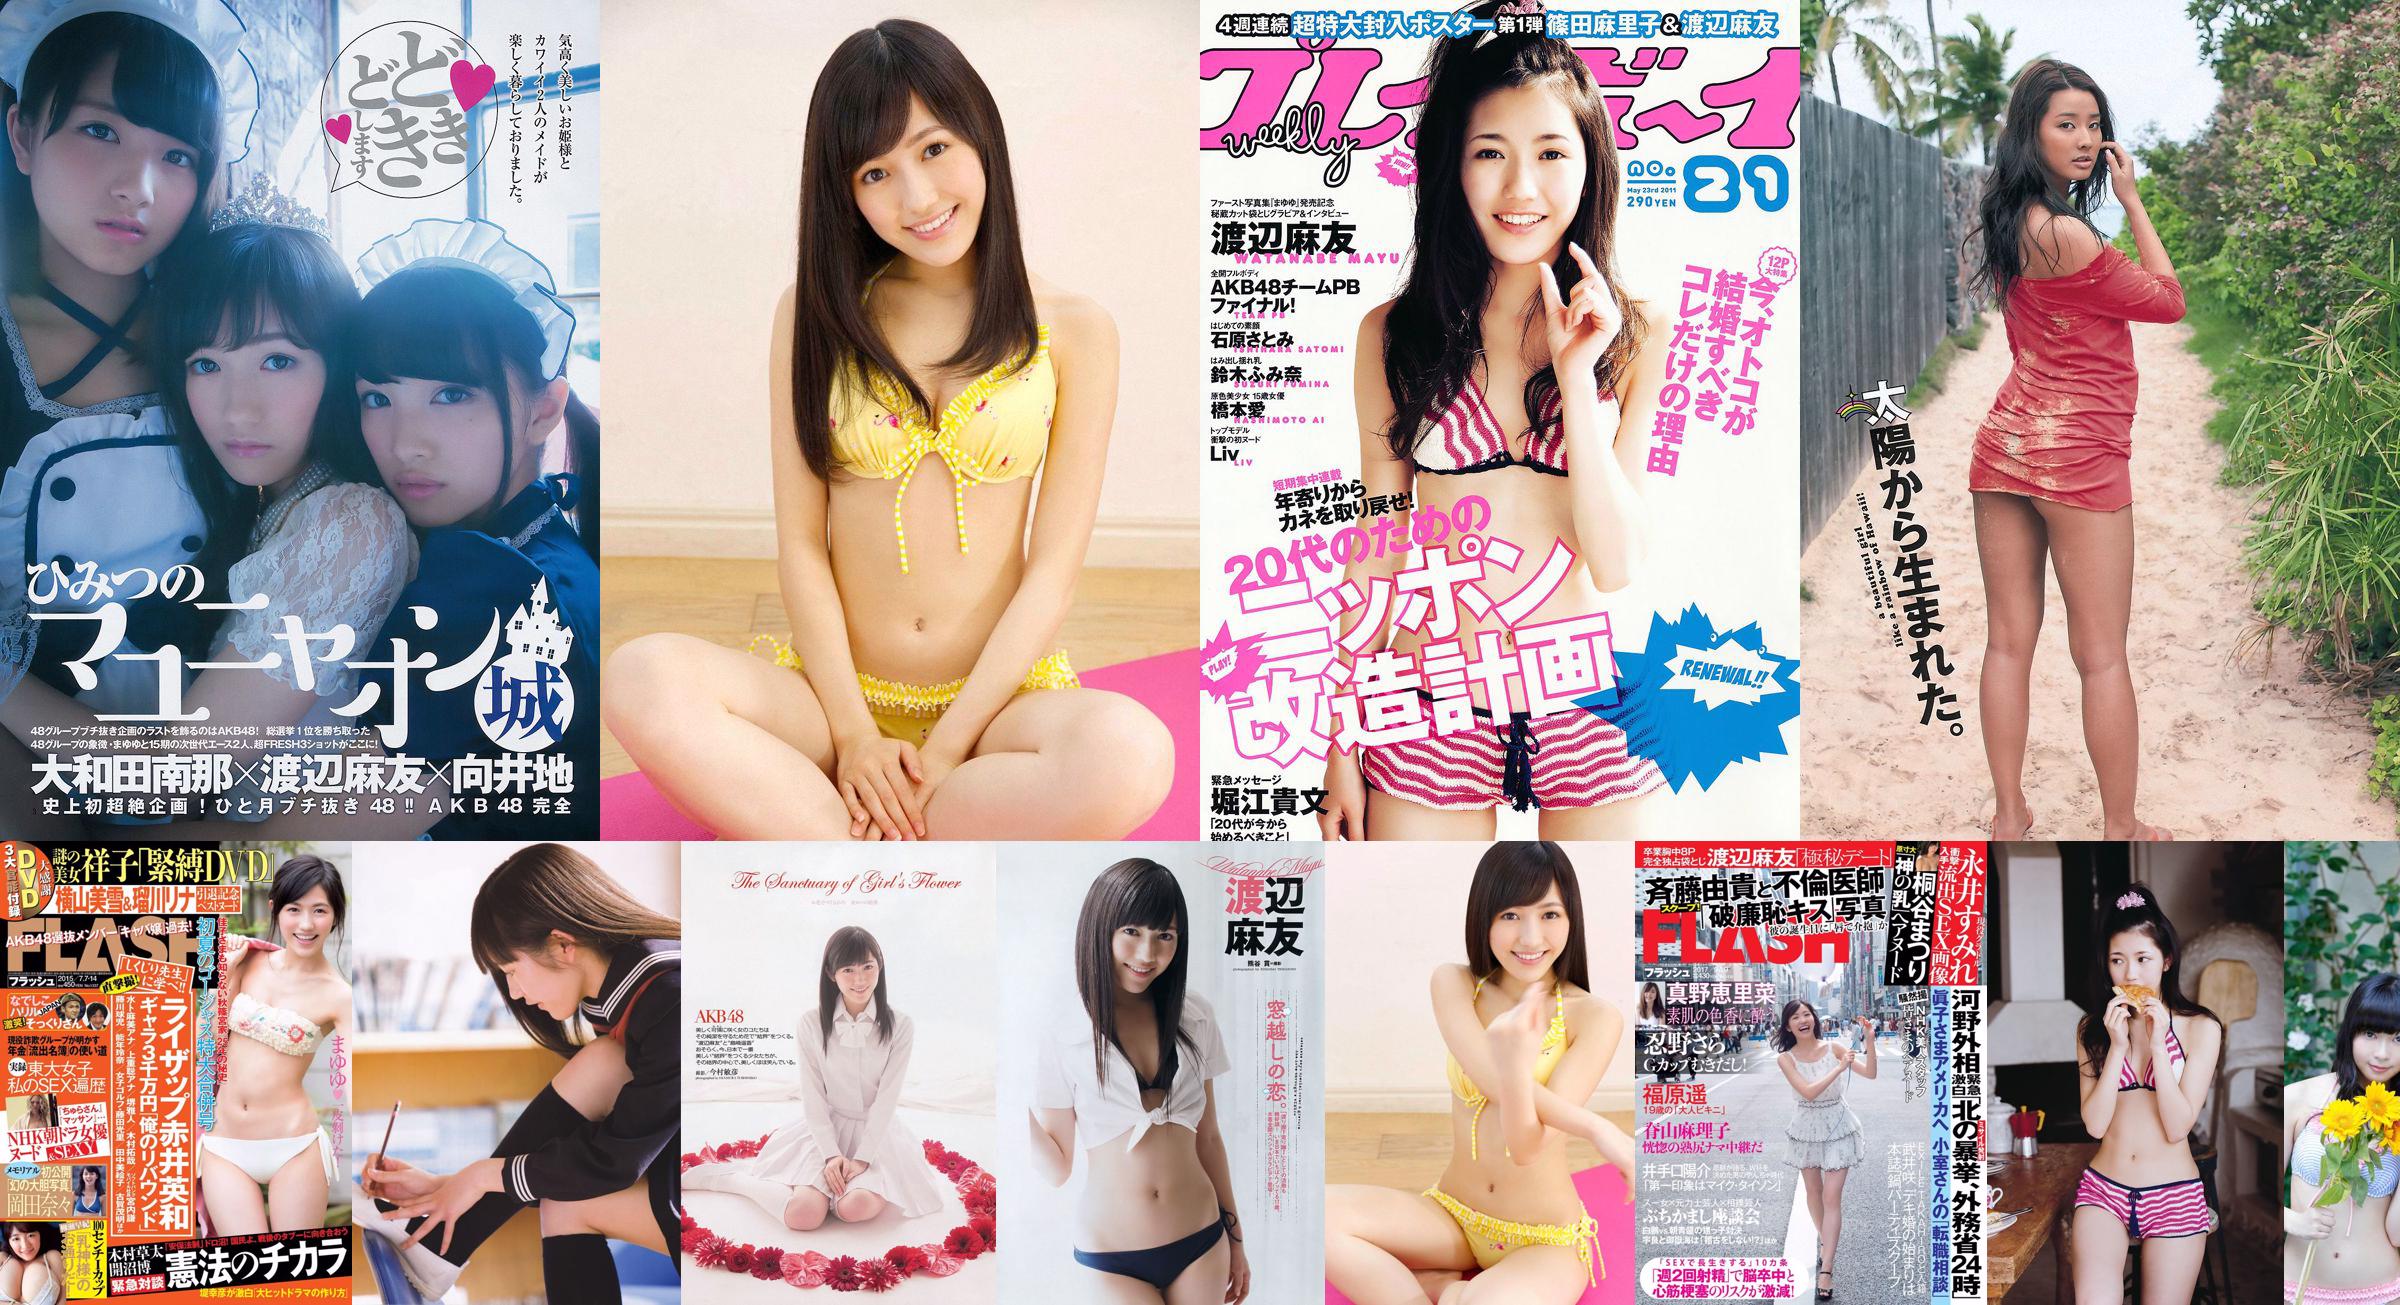 Mayu Watanabe Yuki Kashiwagi Mariko Shinoda [Playboy Semanal] 2012 Fotografia No.46 No.122121 Página 1